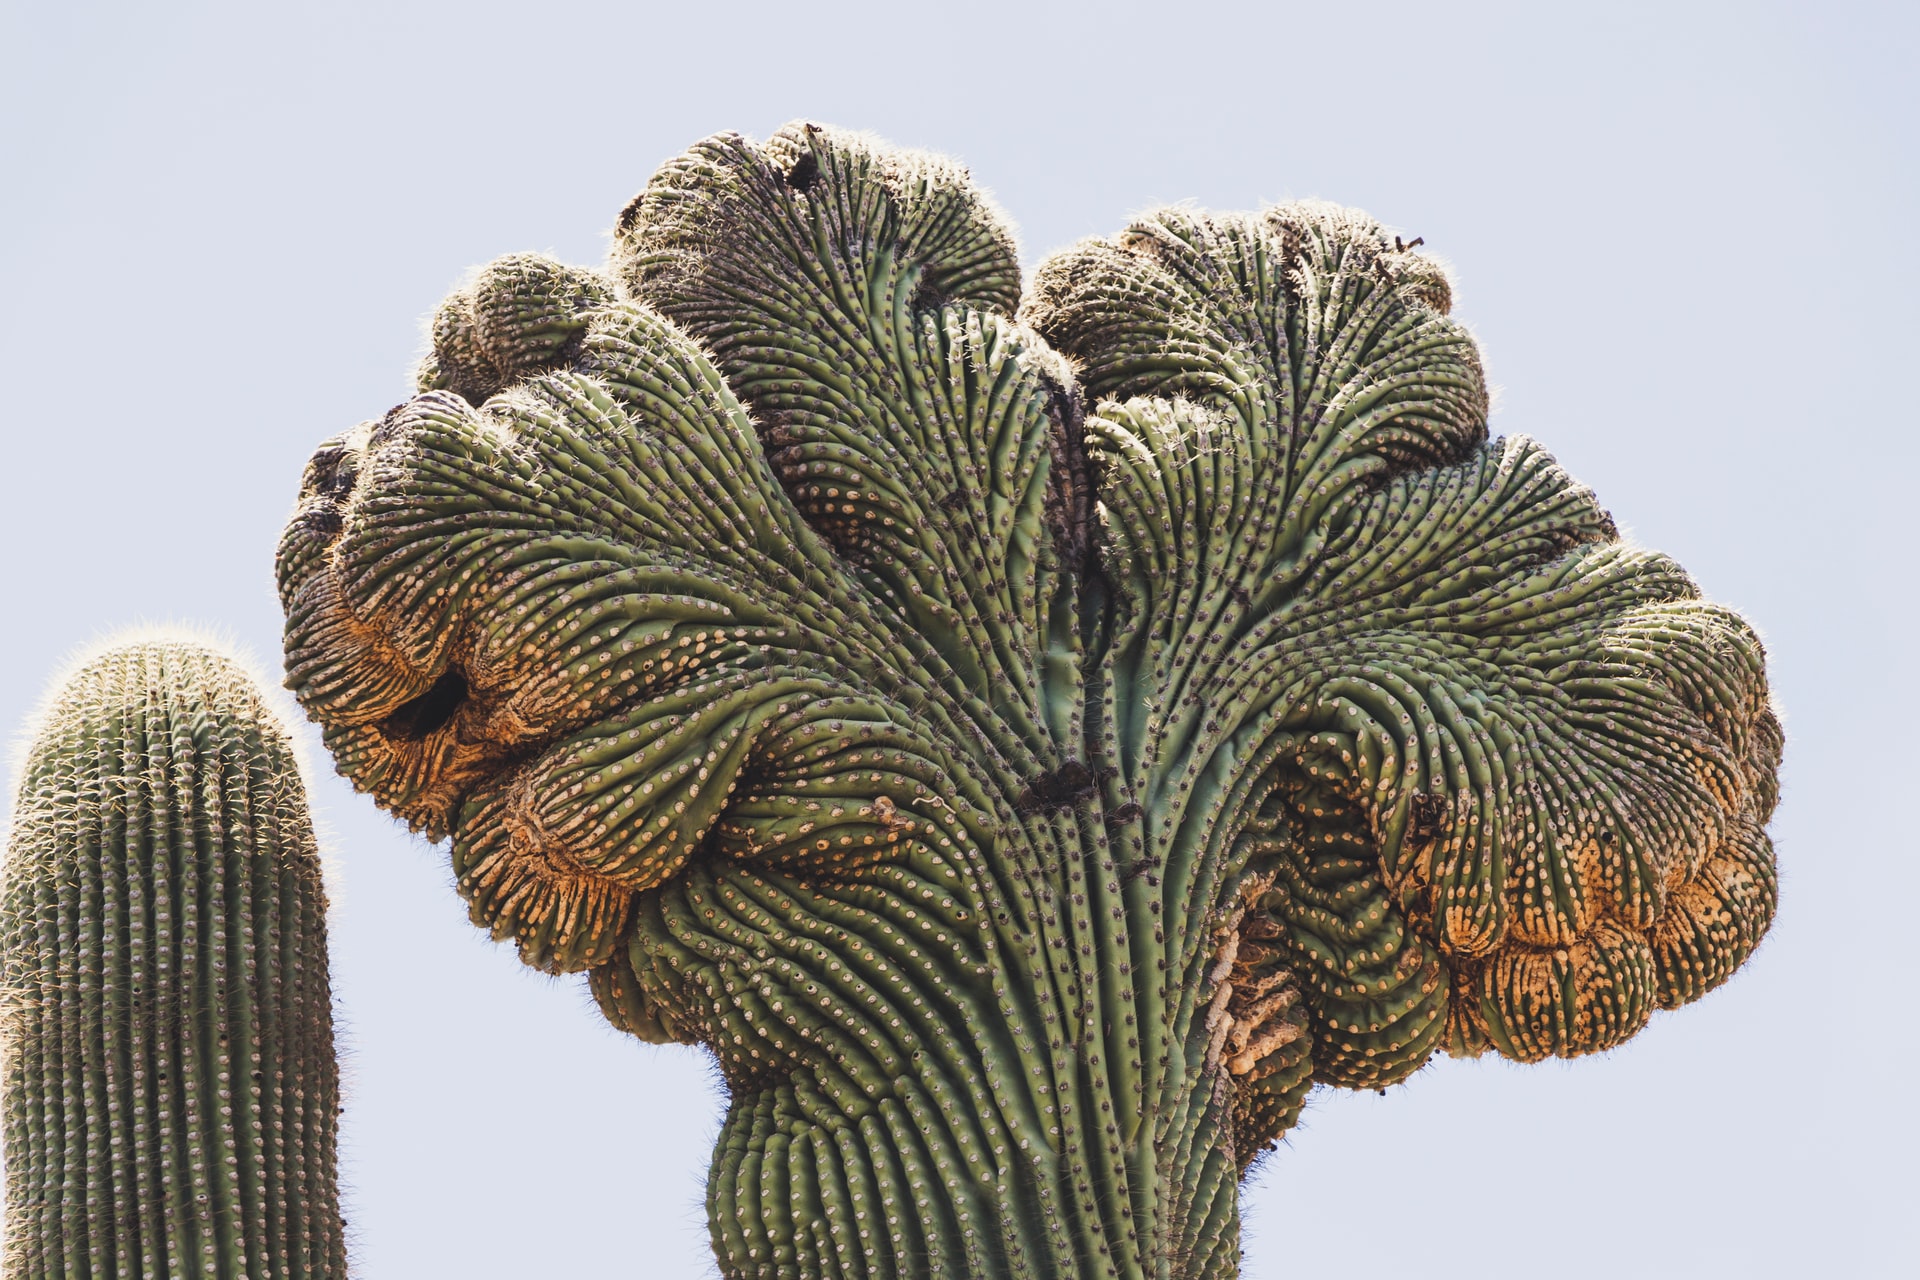 サボテンがいっぱい デザート ボタニカルガーデン Desert Botanical Garden アリゾナ